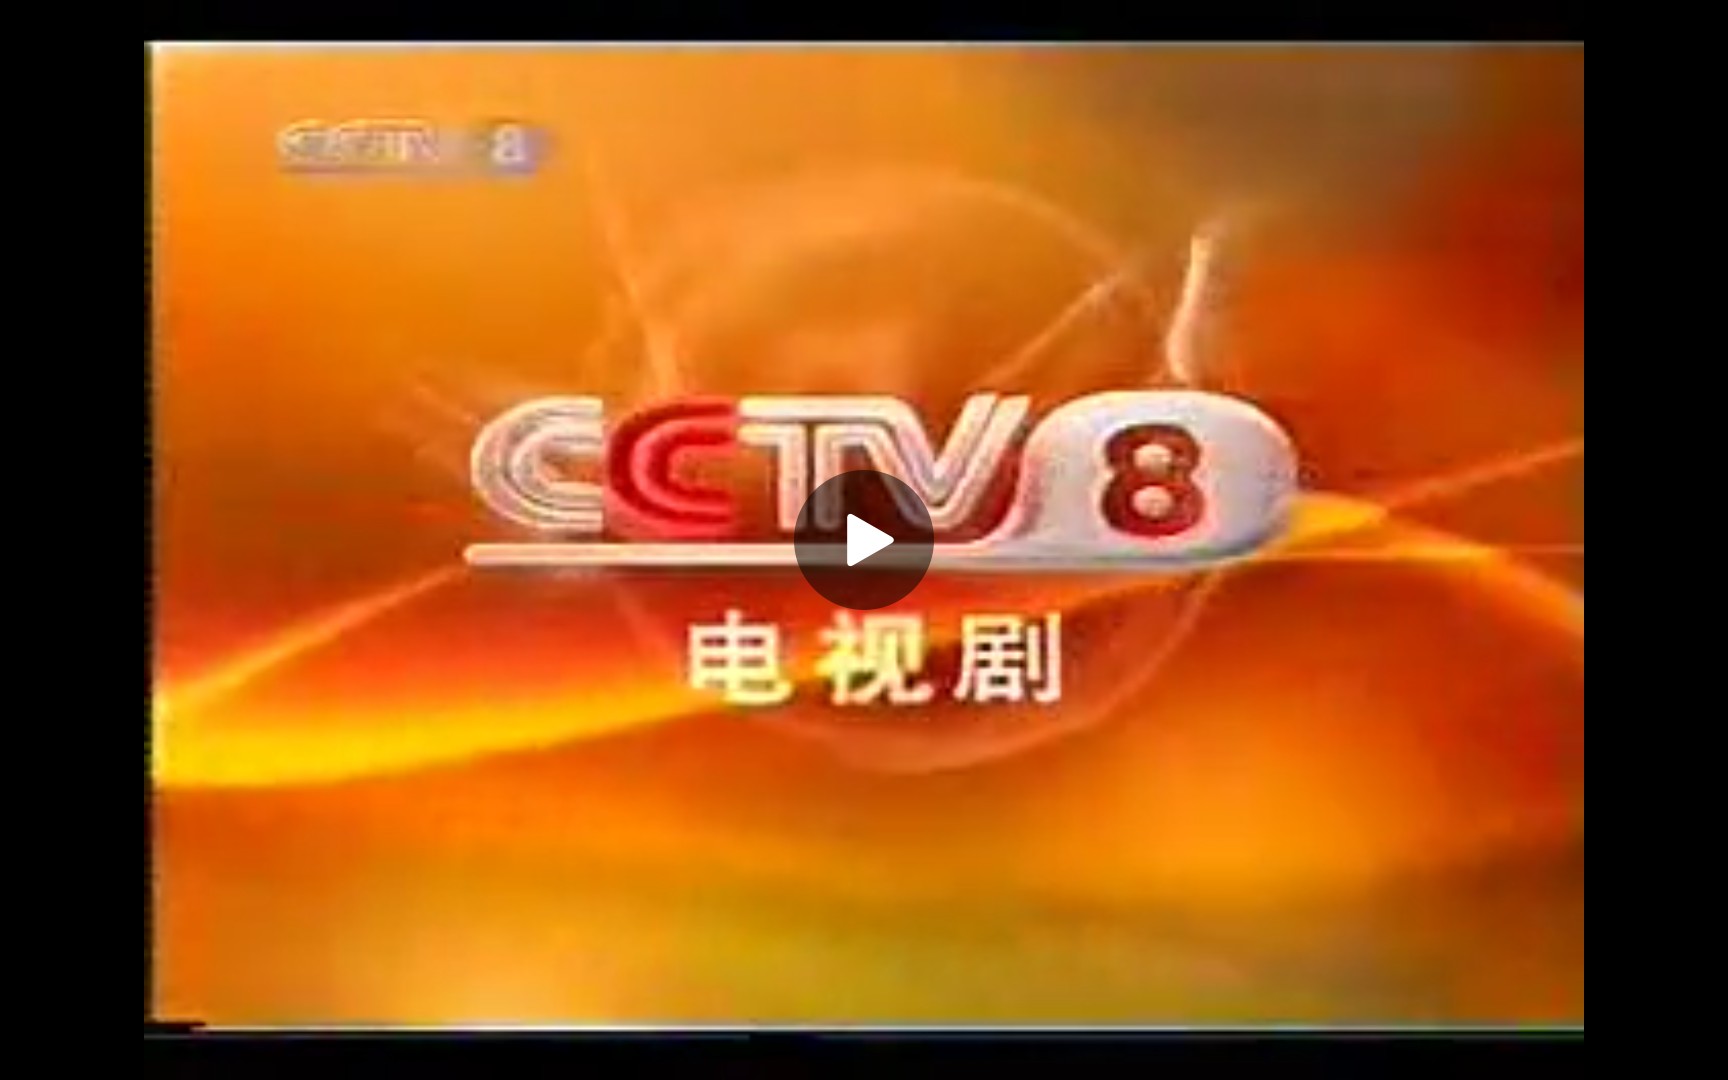 cctv8广告2012图片